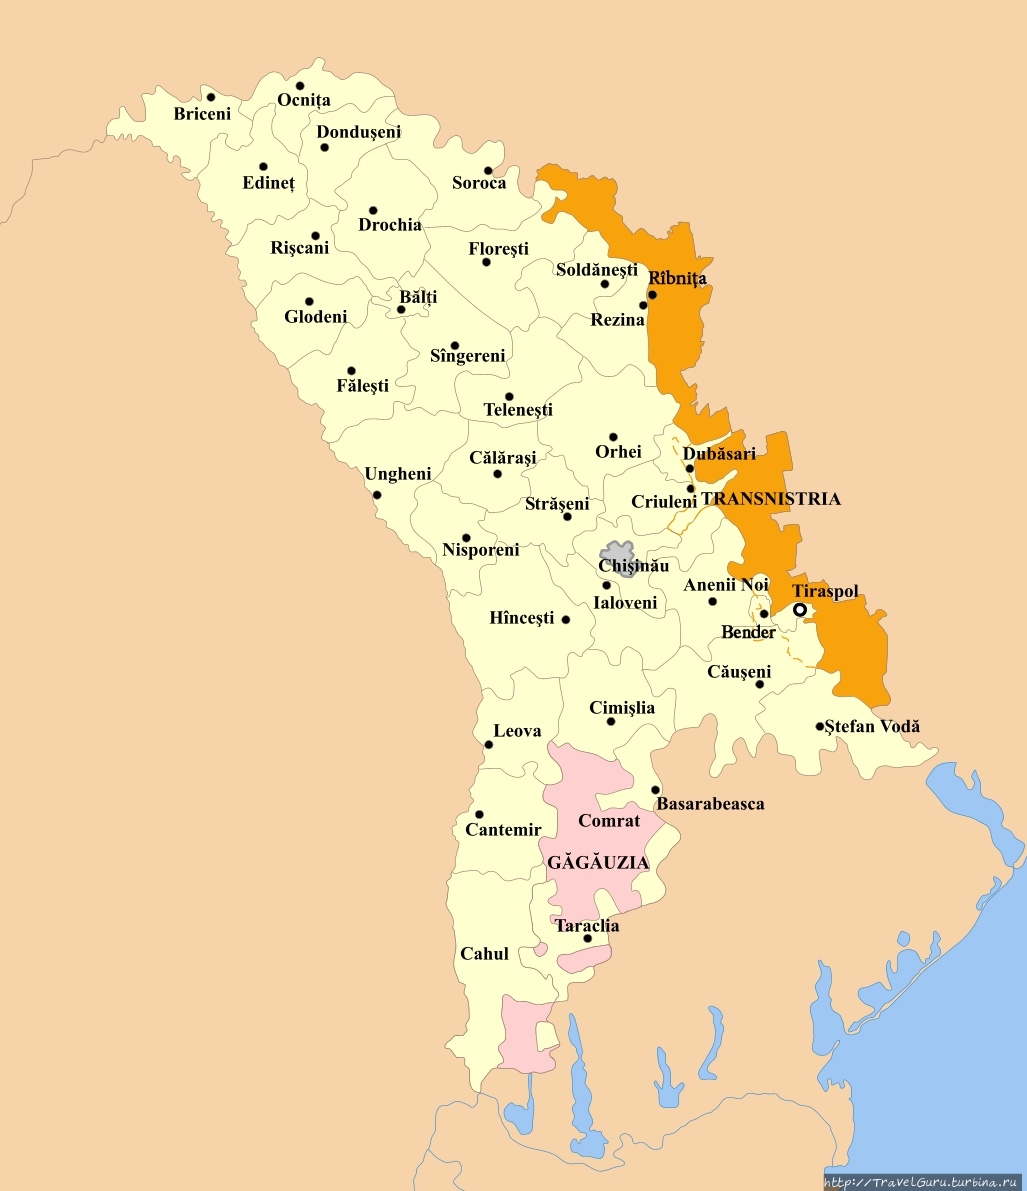 Территория Республики Молдова, в составе которой входит автономное территориальное образование Гагаузия и фактически независимое Приднестровье. Сороки, Молдова